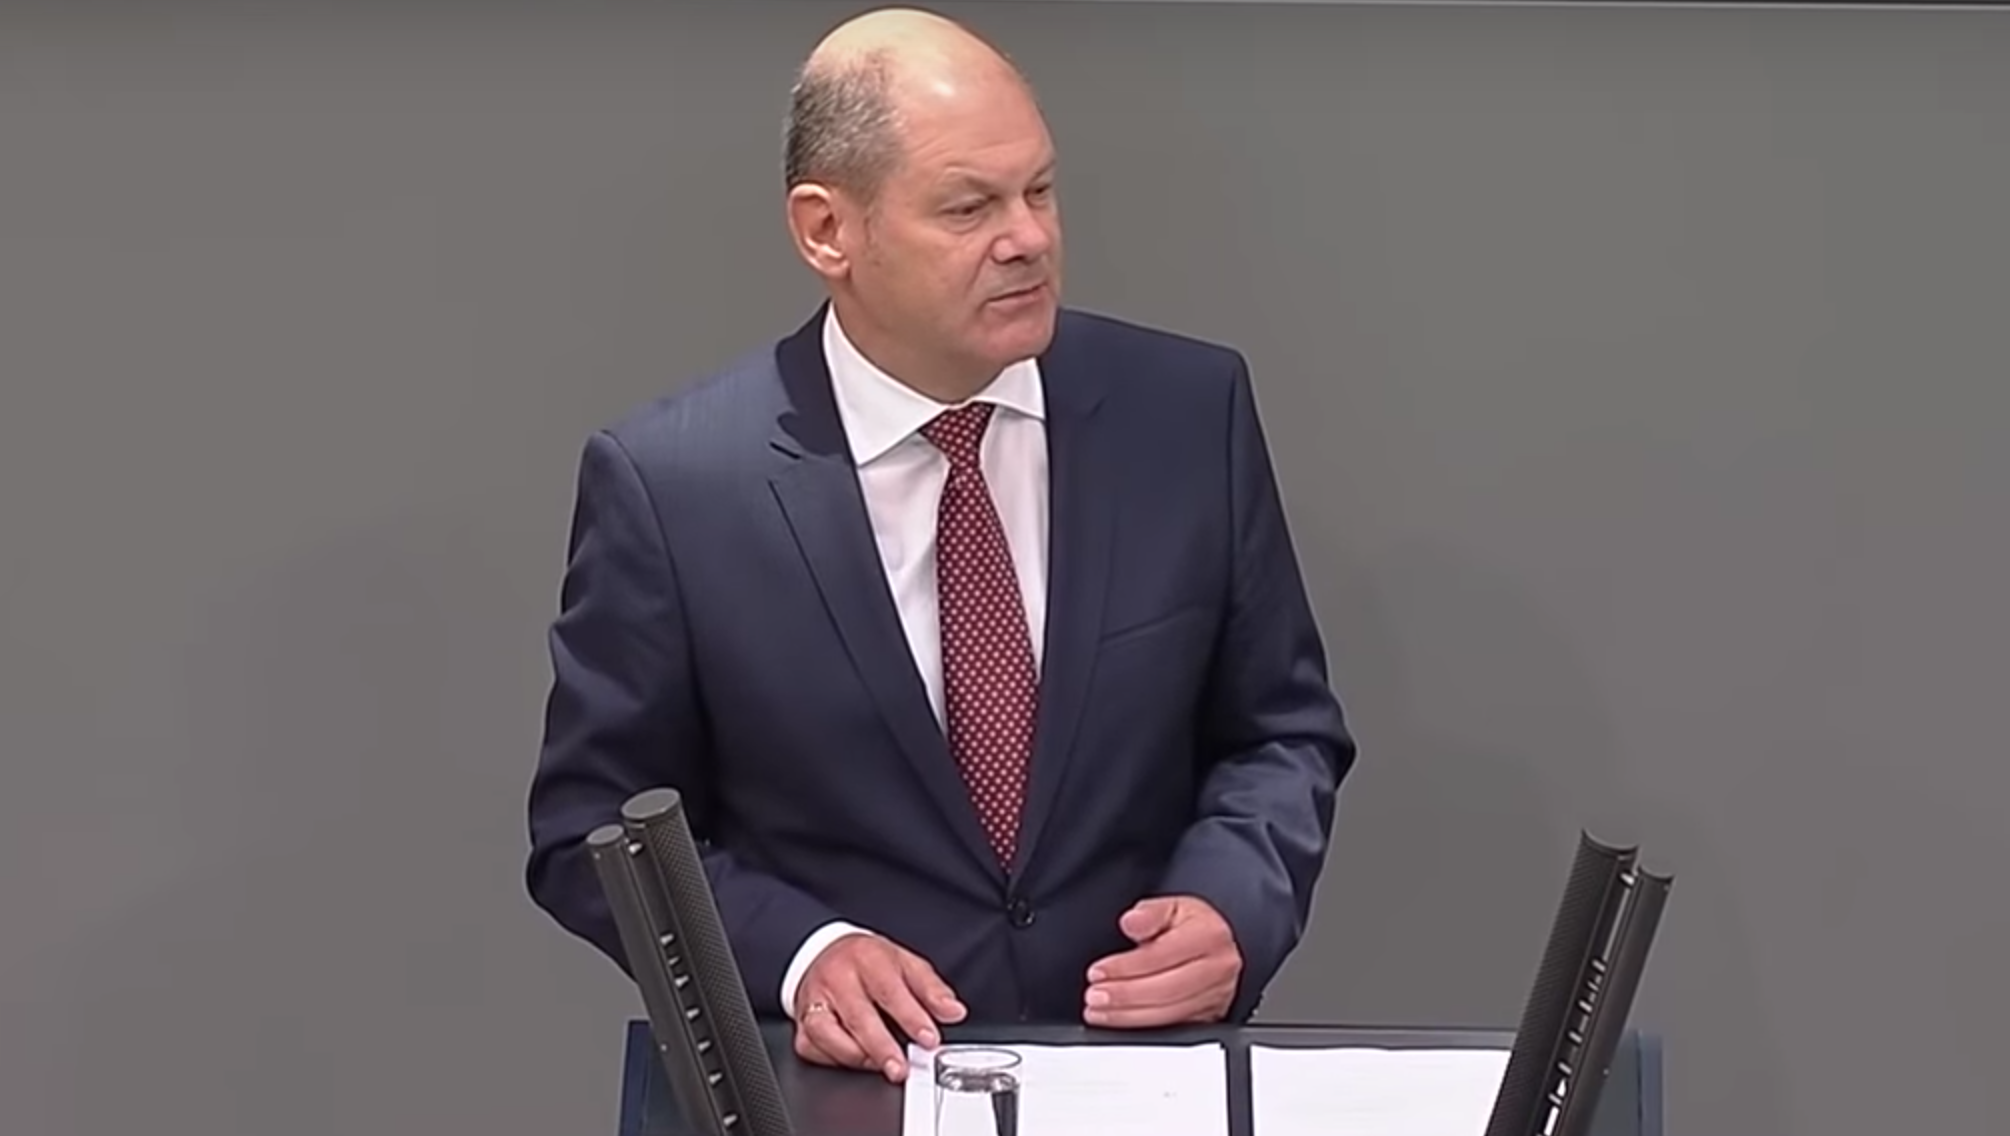 Finanzminister Scholz poltert, Bitcoin diene primär als Währung für illegale Geschäfte